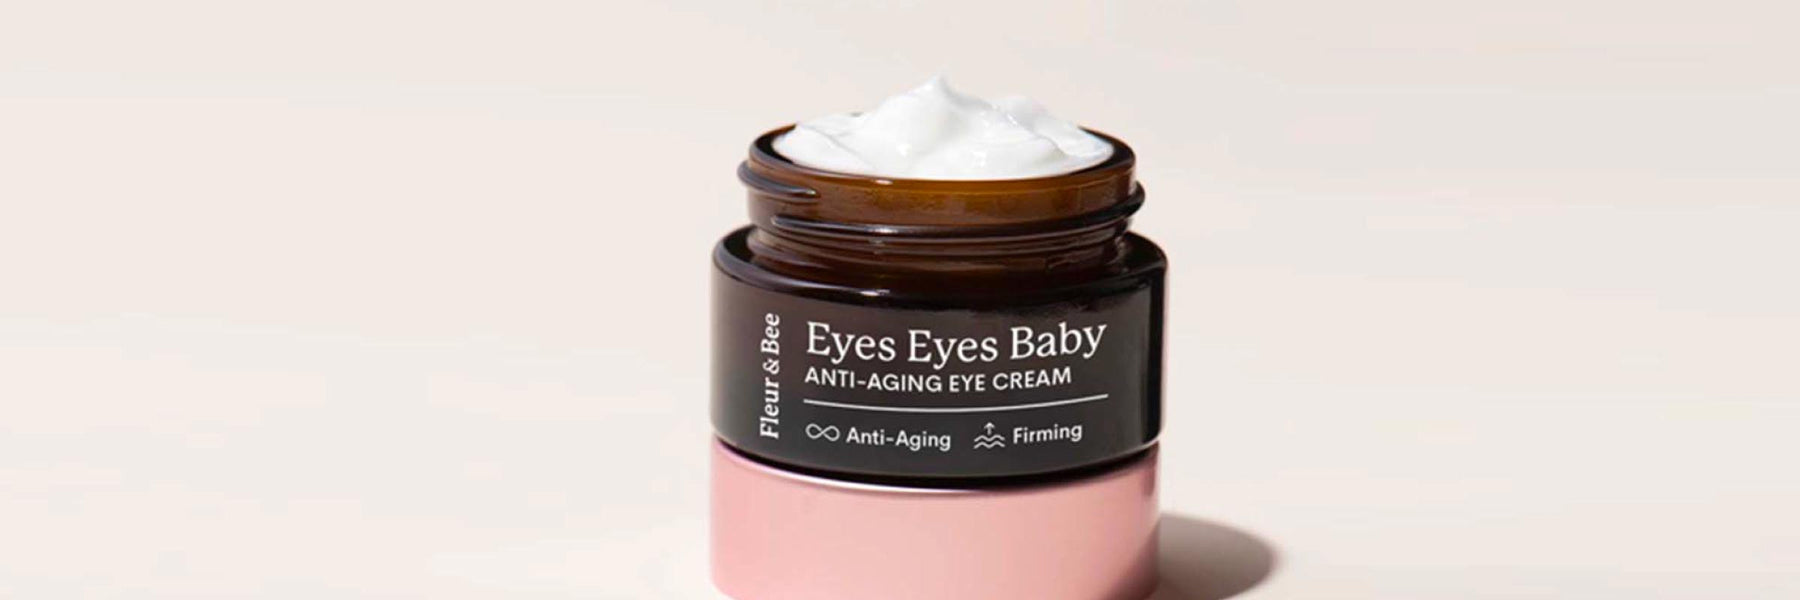 5 Best Anti-Aging Eye Creams